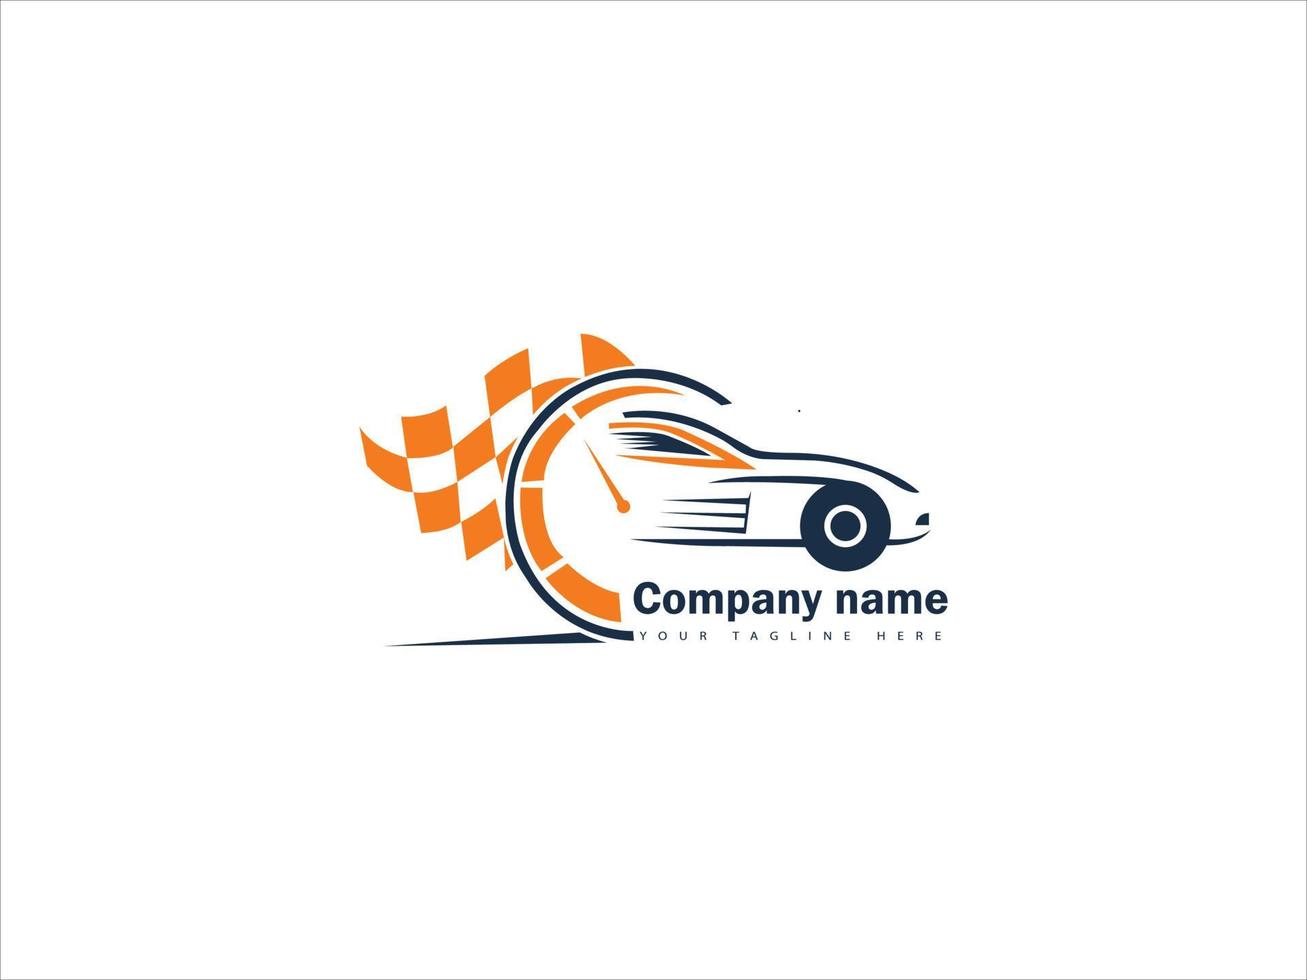 diseño de logotipo de carreras de autos vector